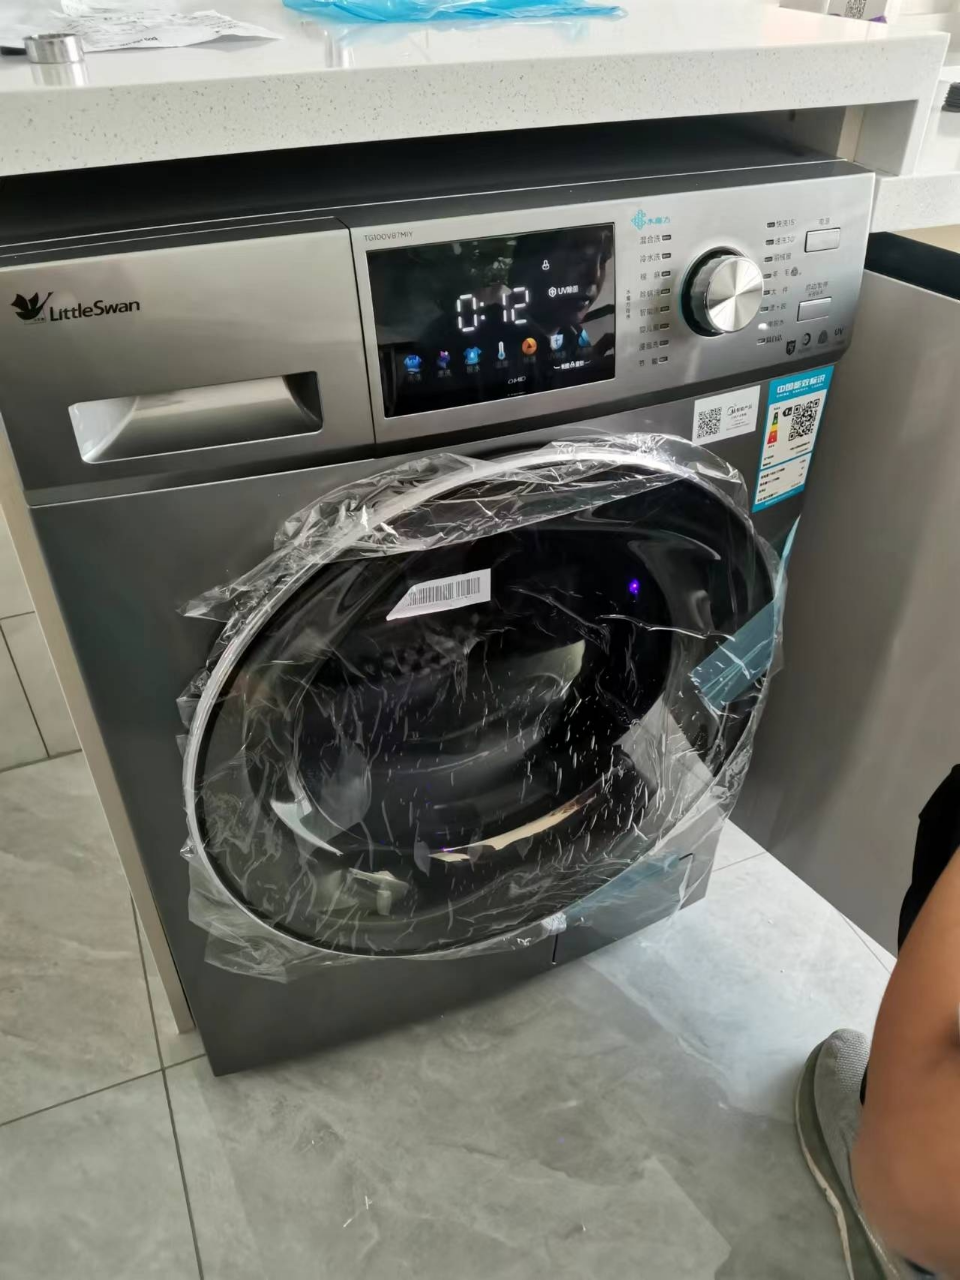 小天鹅(LittleSwan) 水魔方系列 洗衣机全自动 10公斤滚筒 超薄 彩屏自投 护色护形 TG100V87MIY晒单图